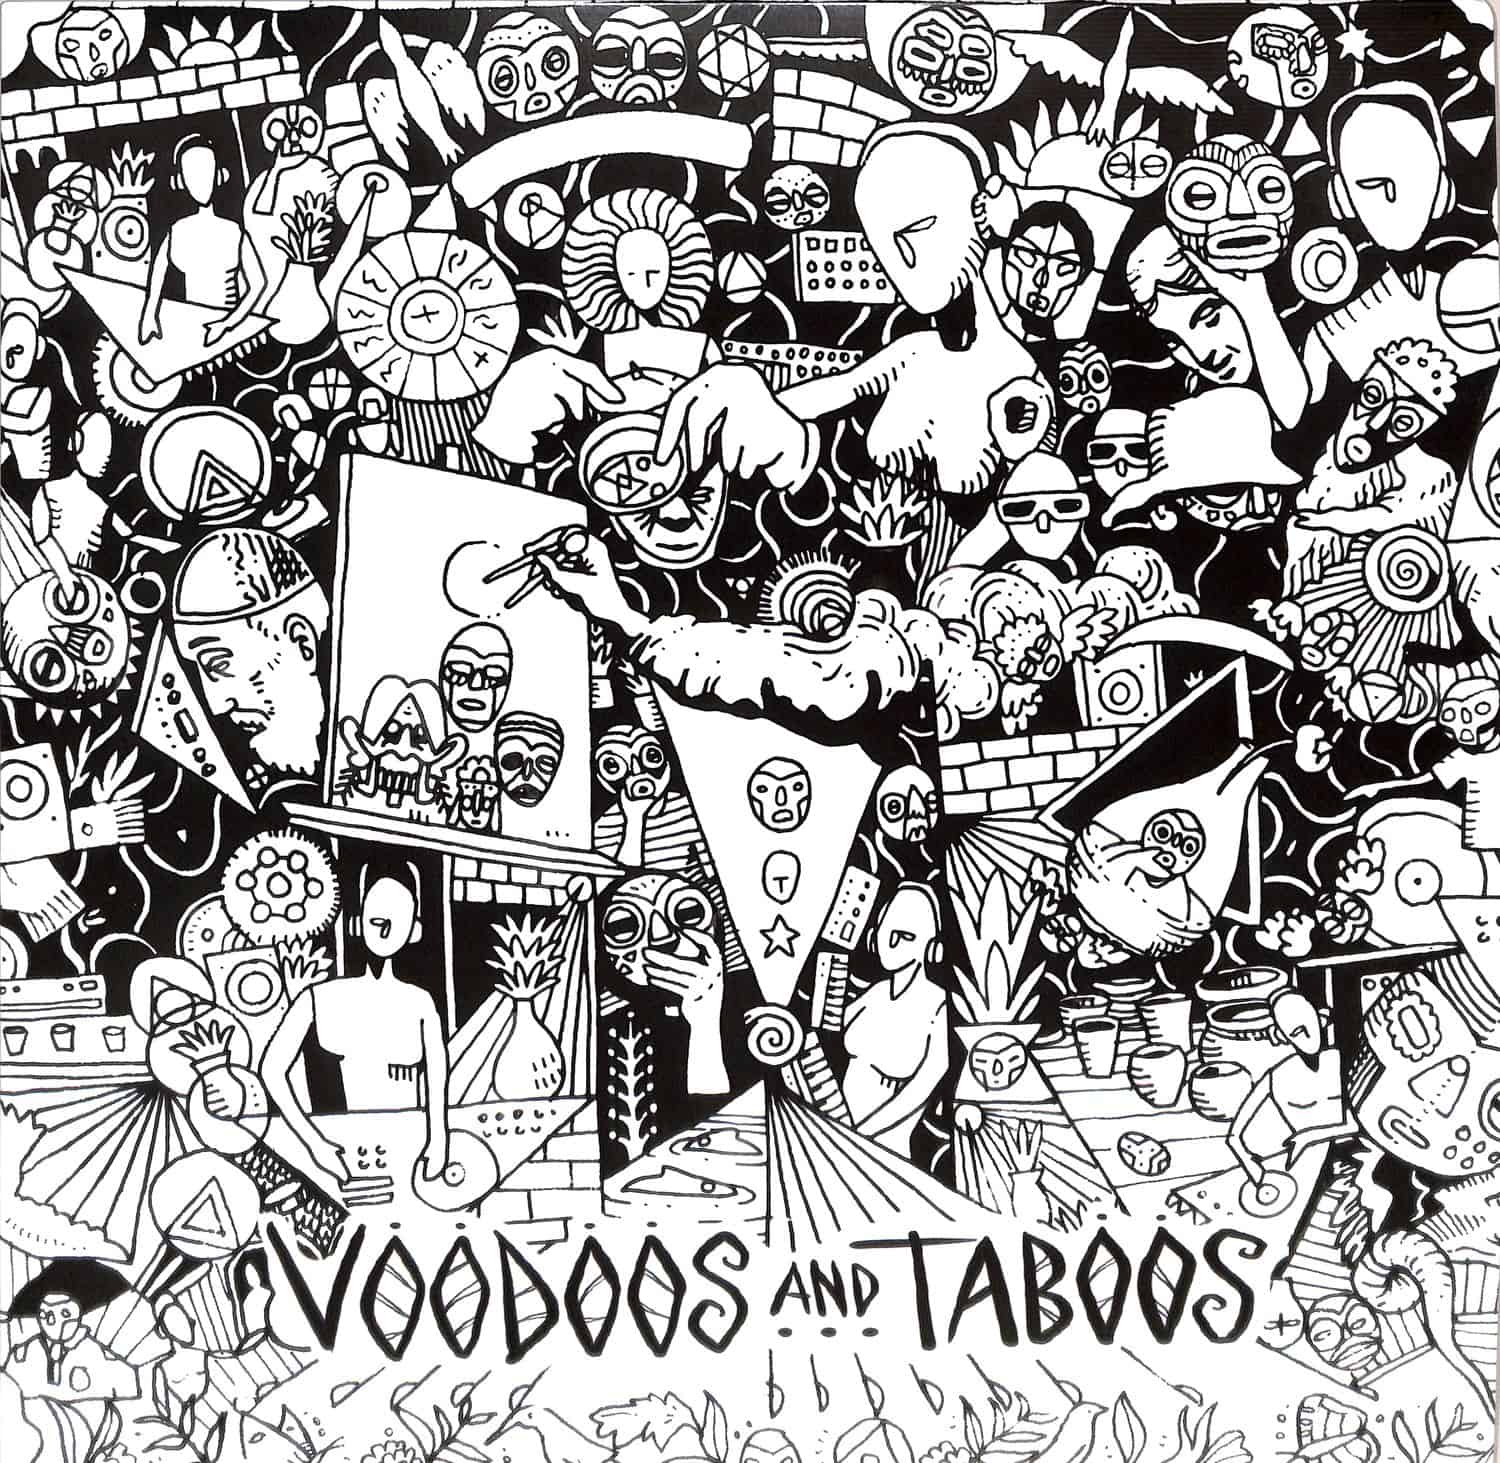 Voodoos & Taboos - CATARSI EP